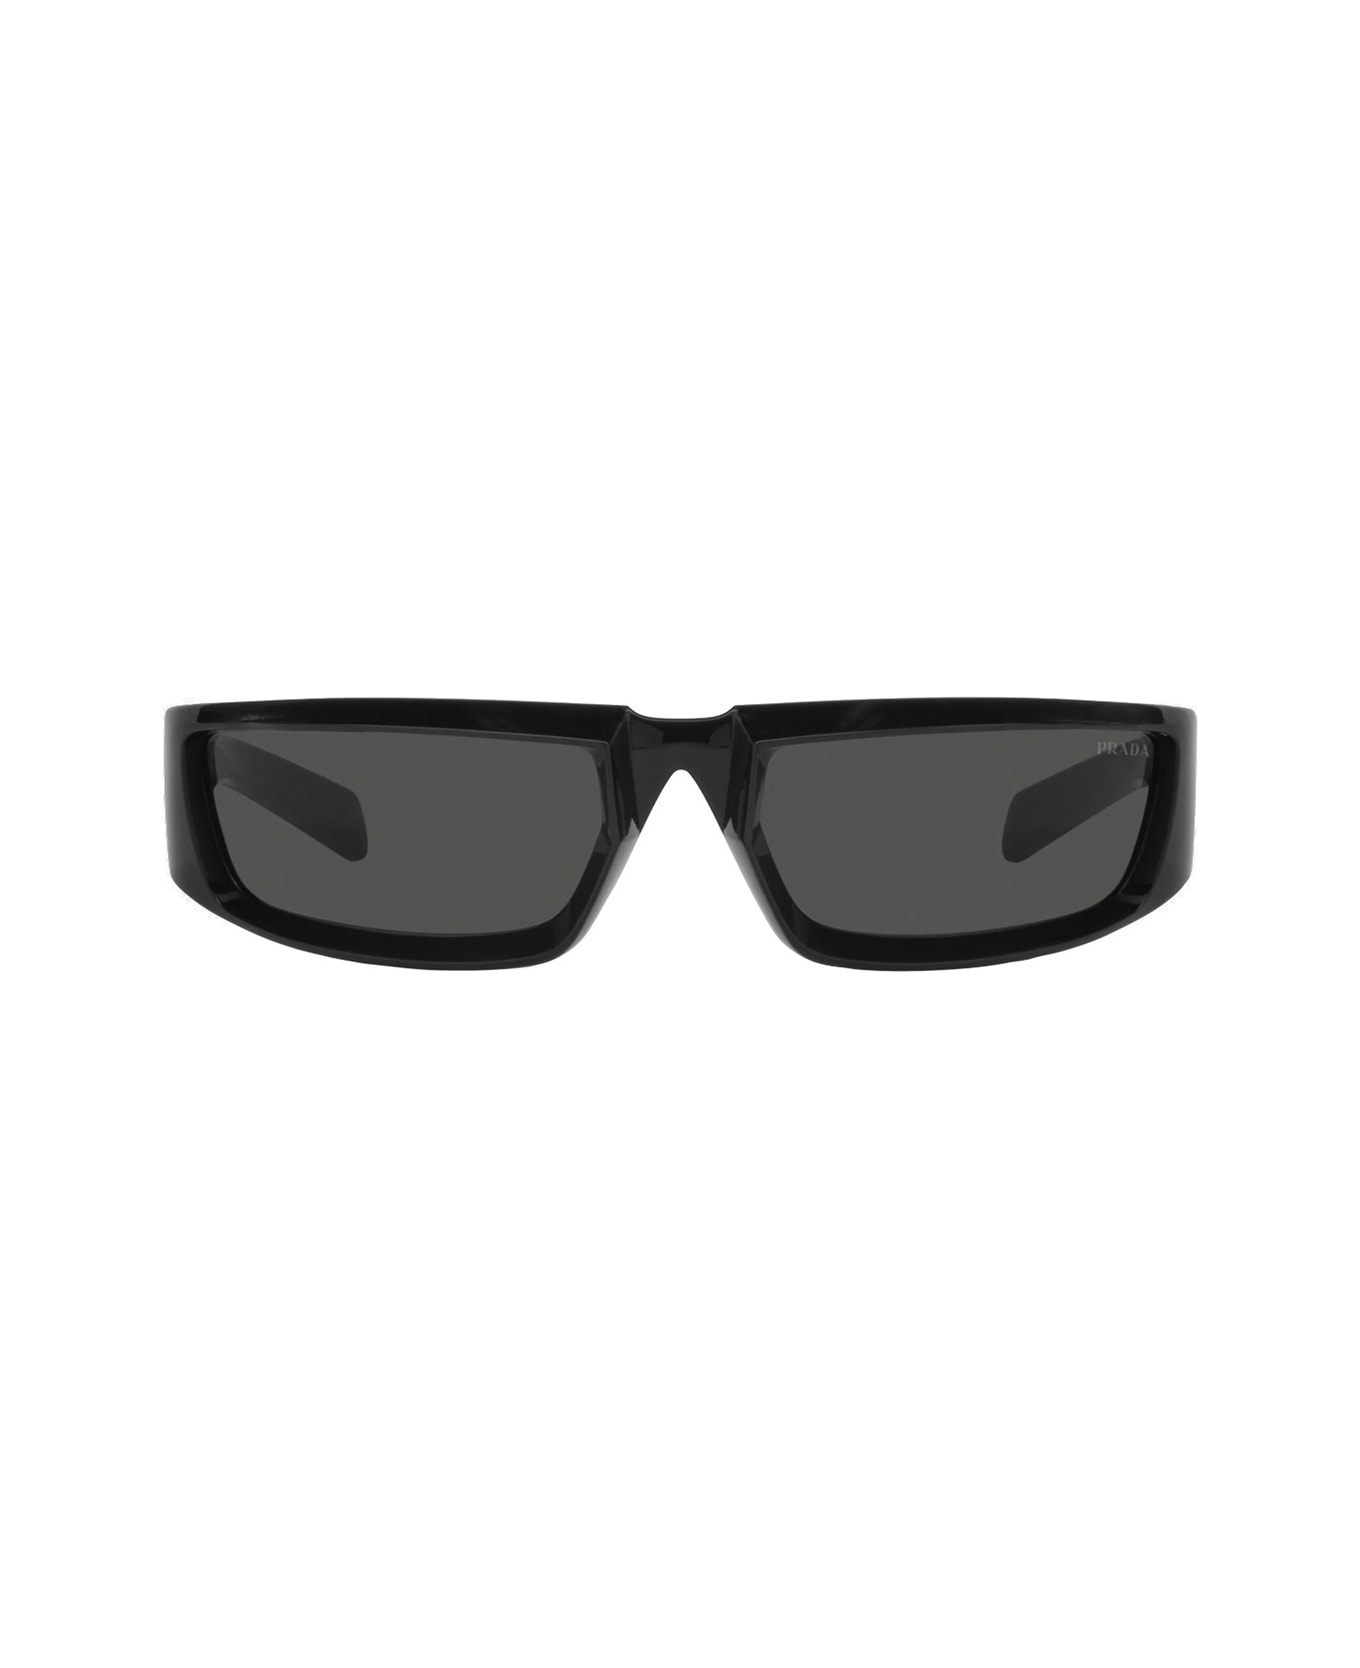 Prada Eyewear Pr 25ys Sunglasses - Nero